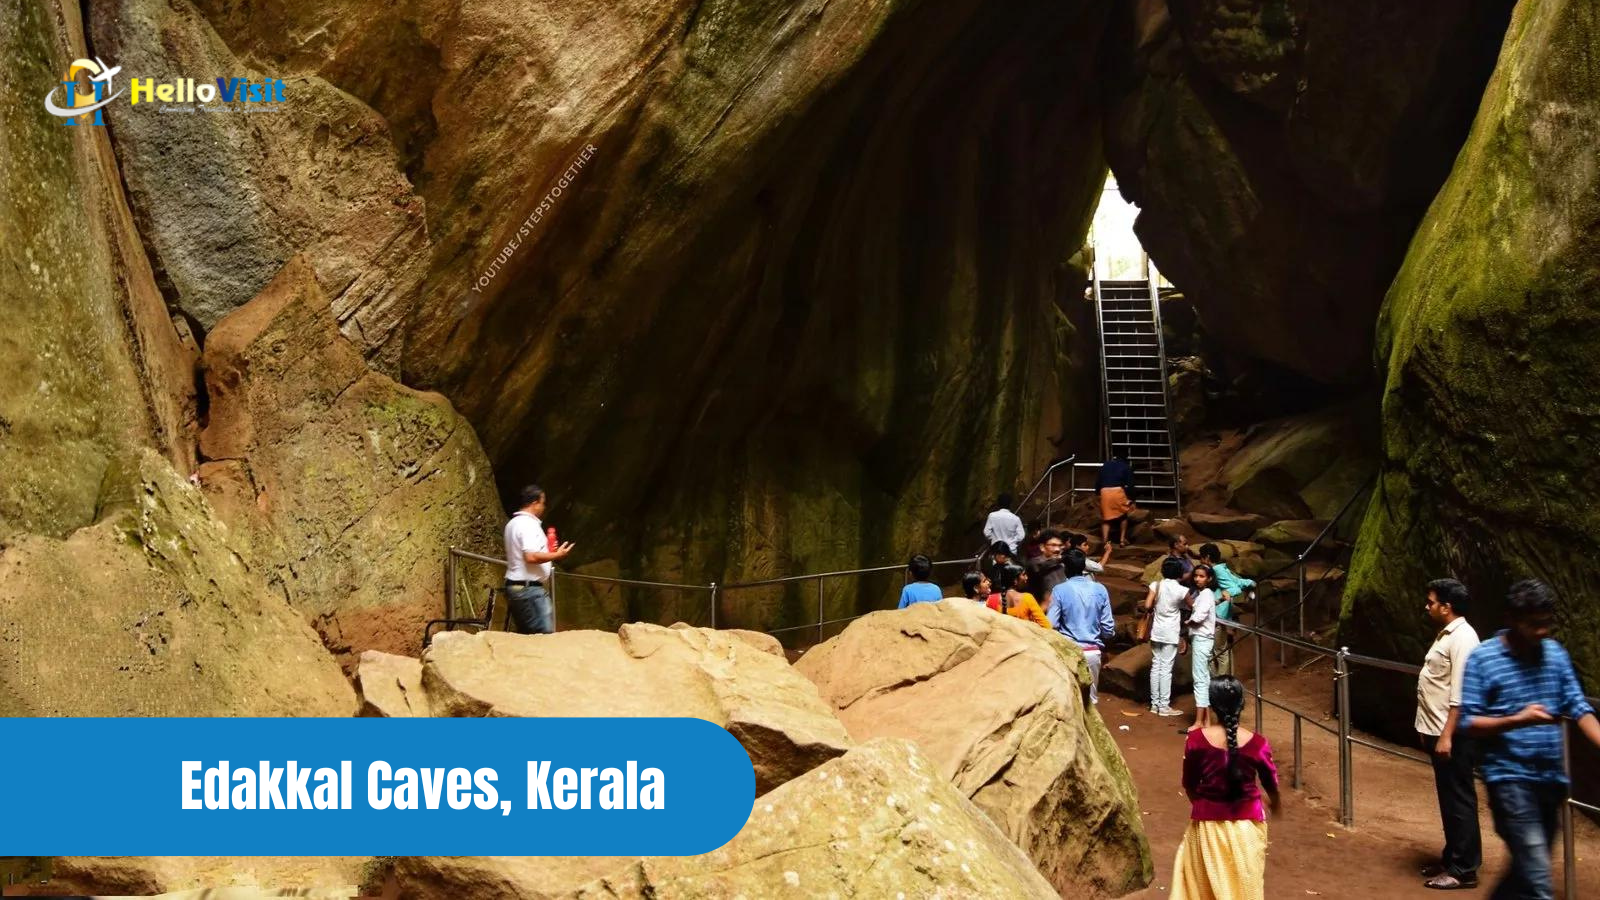 Edakkal Caves, Kerala